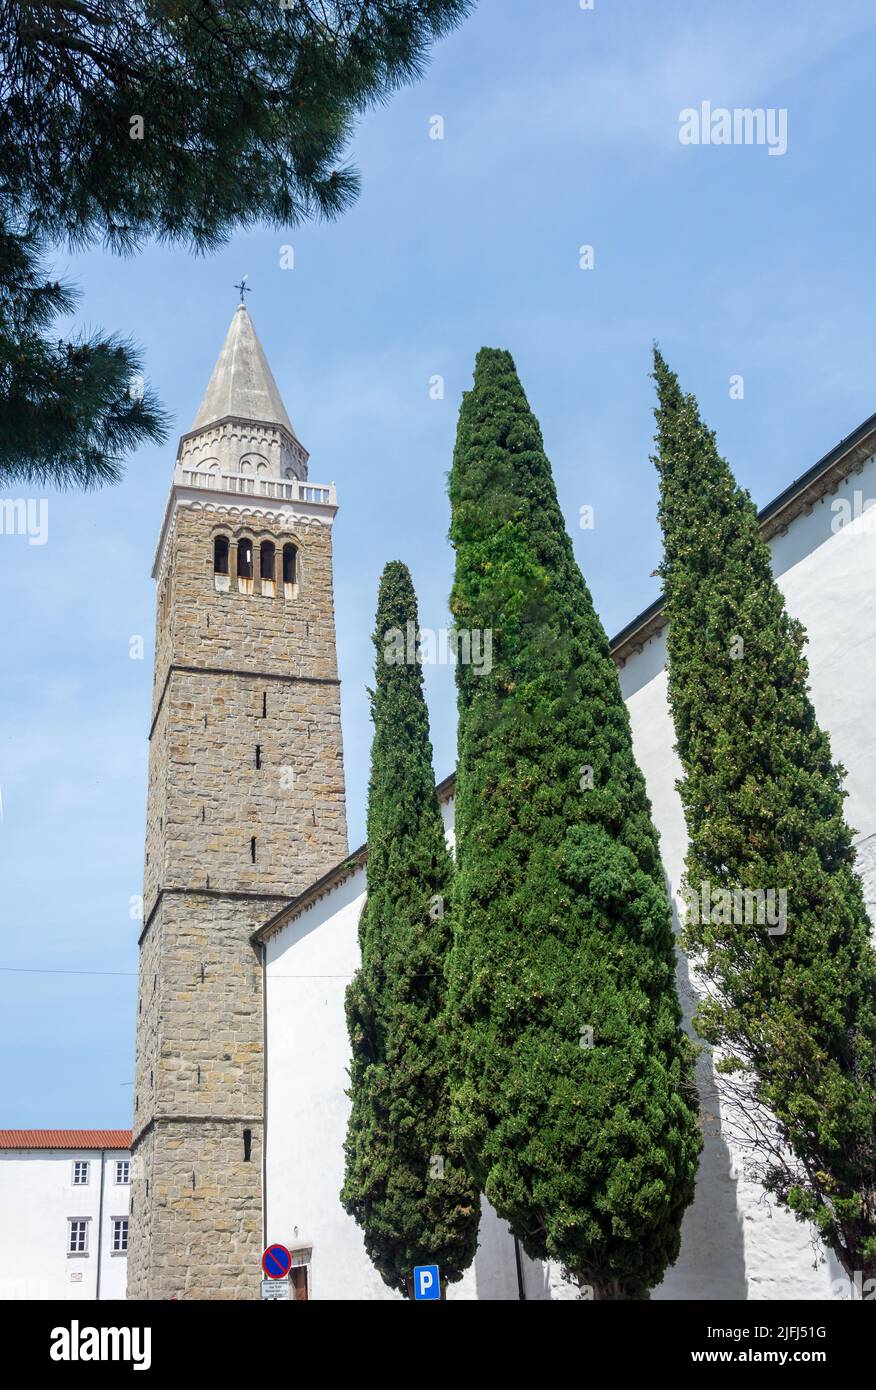 Cathédrale de l'Assomption, Trg Brolo, Koper, slovène Istrie, Slovénie Banque D'Images